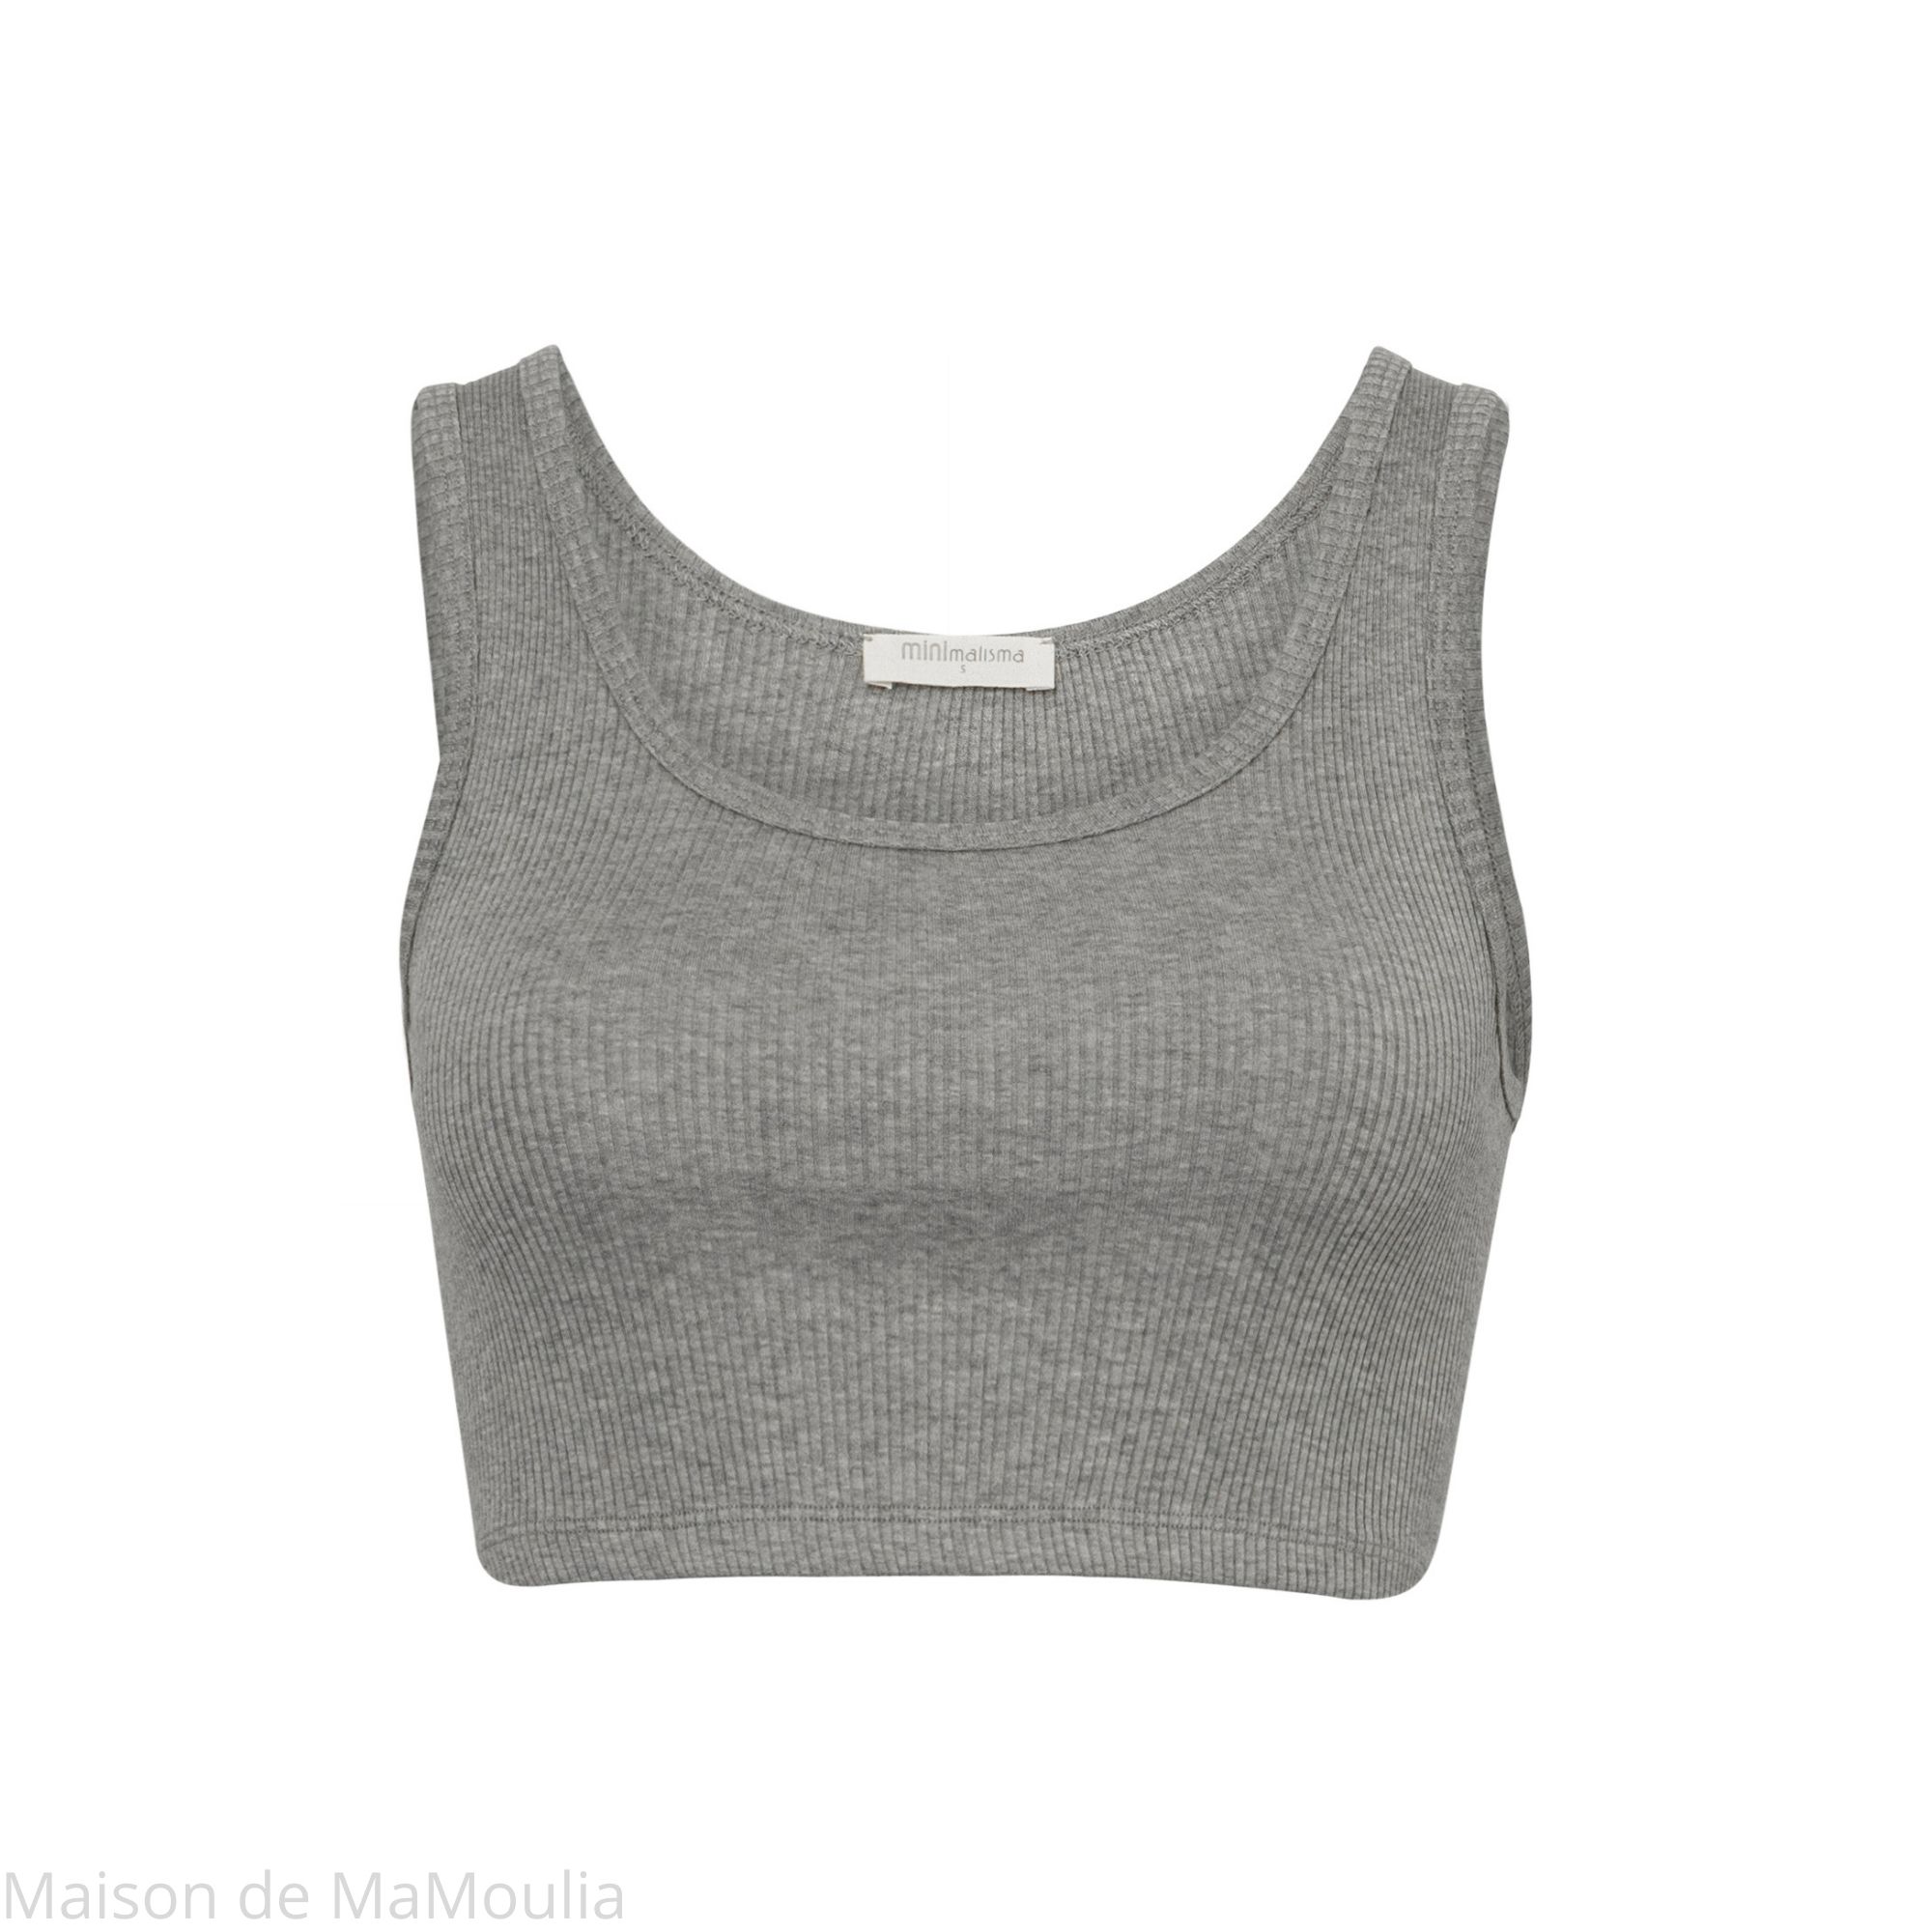 minimalisma-300-Genius-brassiere-femme-sport-yoga-top-soie-coton-bio-maison-de- mamoulia-gris